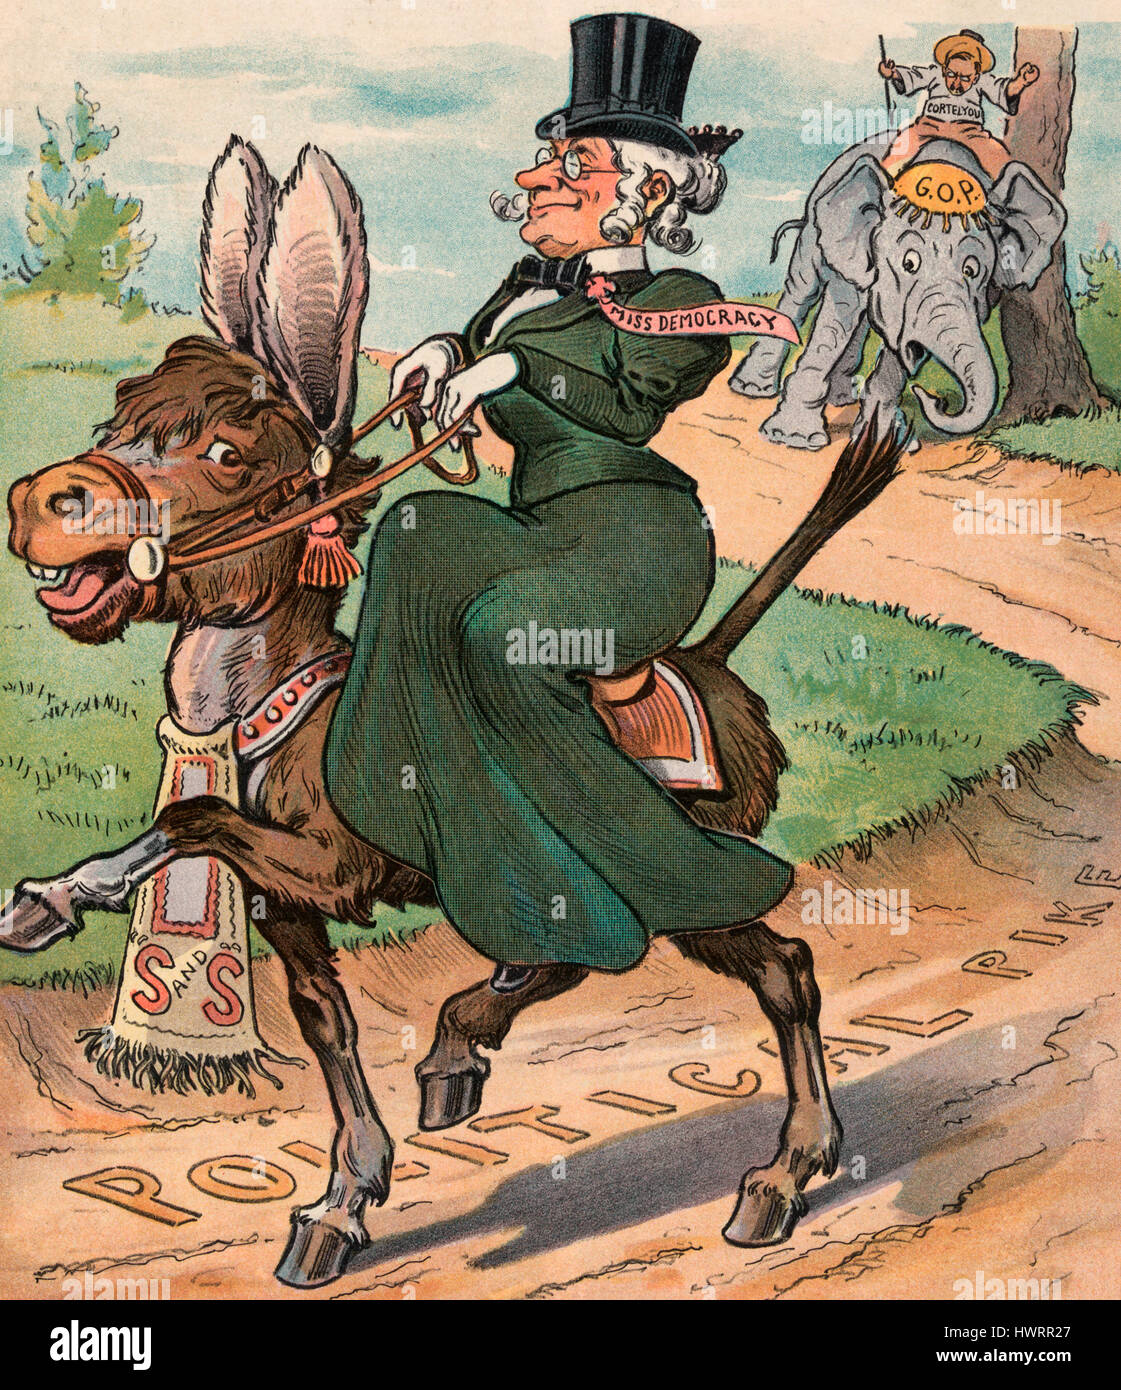 Transformé - L'illustration montre une vieille femme marqués 'Miss démocratie' équitation sur l'âne démocrate le long d'un chemin de terre, portant la mention "Spike" politique ; il y a une bannière étiqueté et S' (coffre-fort et sain) suspendu au cou de l'âne. Dans l'arrière-plan, l'éléphant républicain marqués 'G.O.P.", montée par George B. Cortelyou, est appuyée contre un arbre. Caricature politique, 1904 Banque D'Images